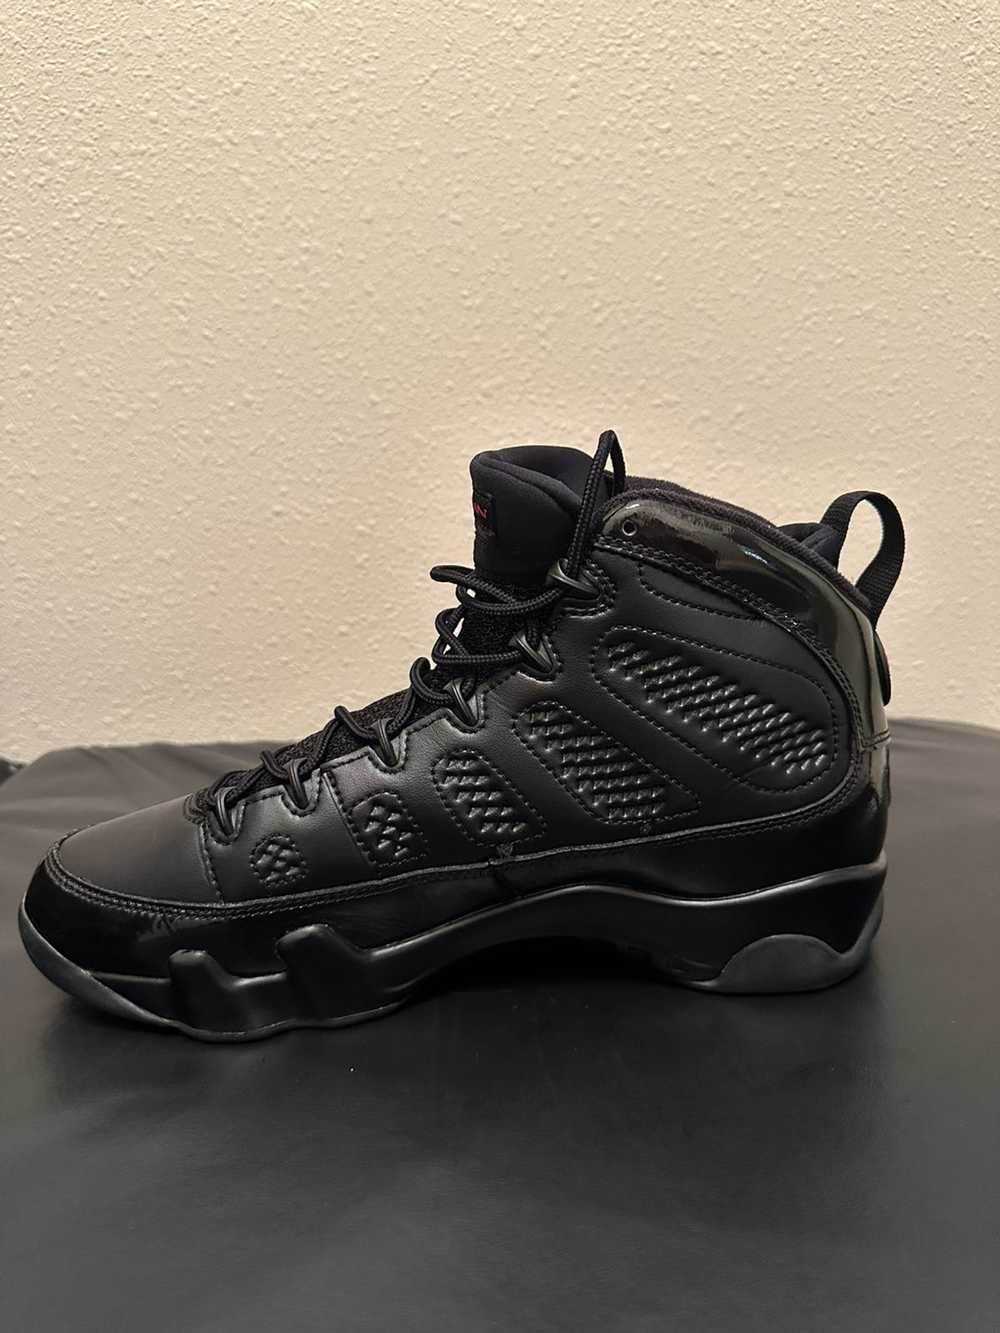 Jordan Brand × Nike Jordan 9 Retro Bred Patent - image 5